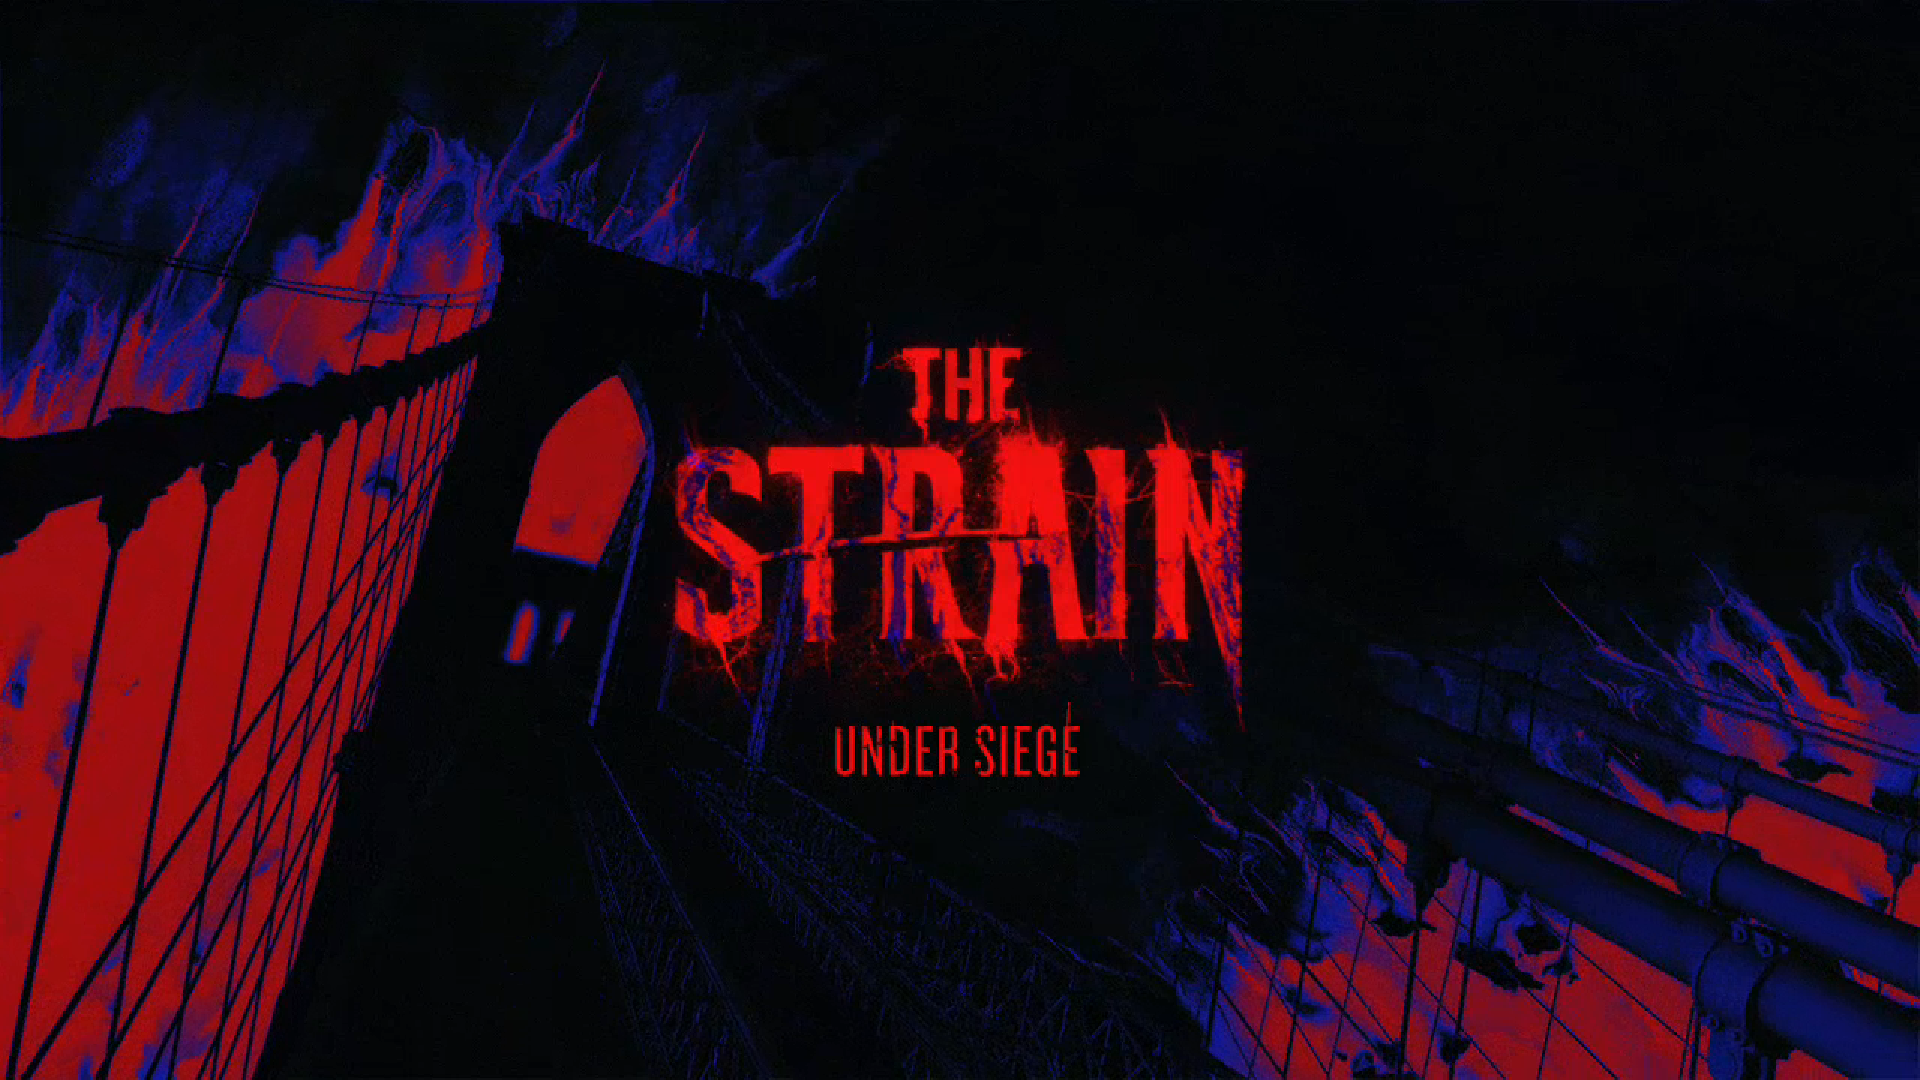 Show The Strain: Under Siege